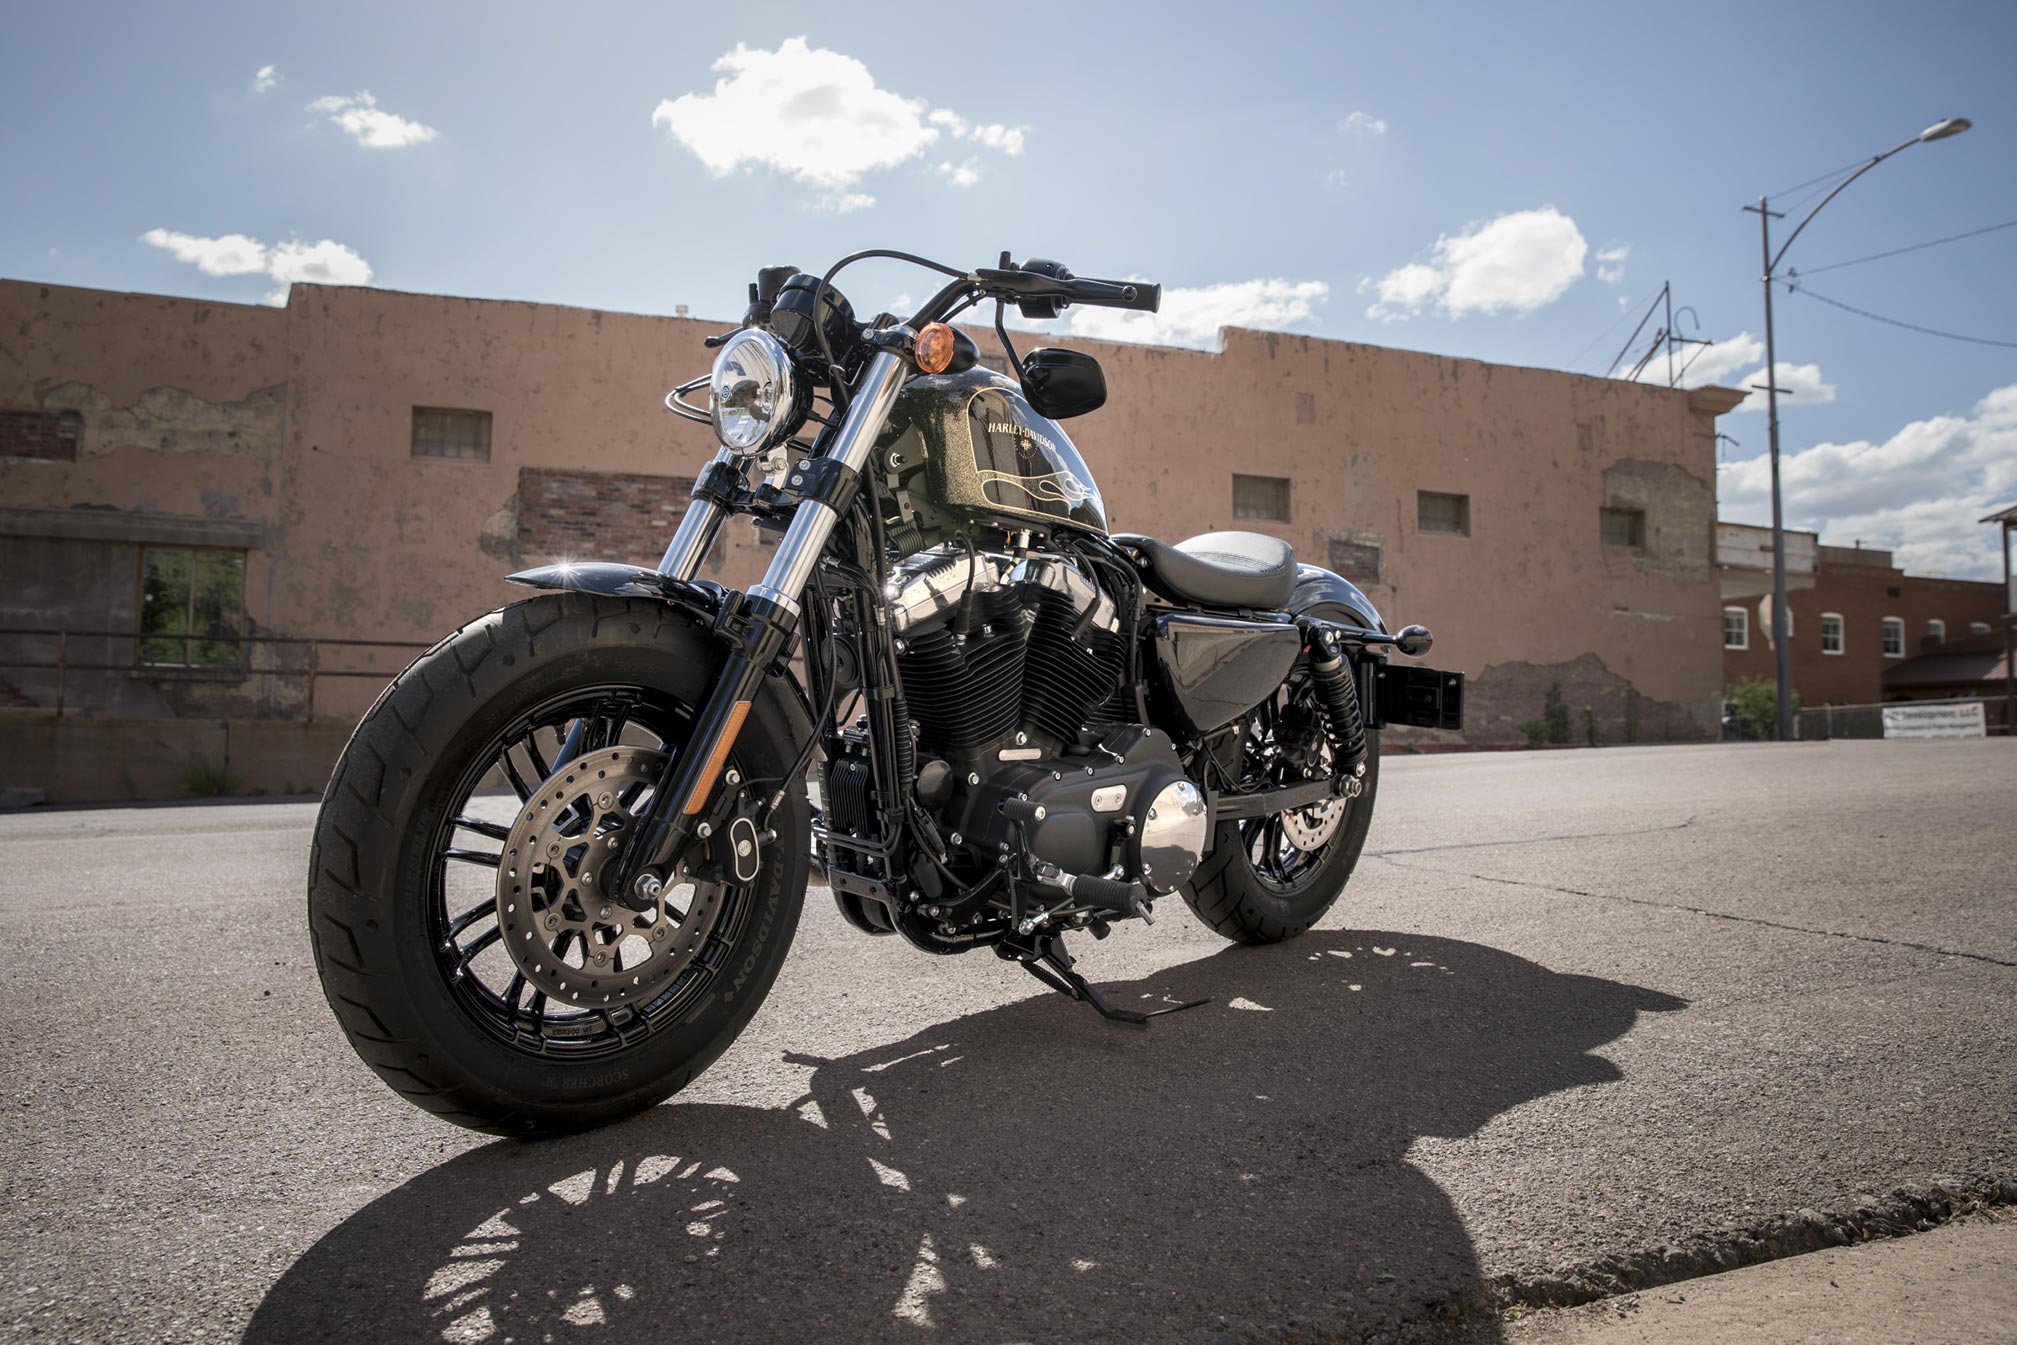 Meilleurs fonds d'écran Harley Davidson Quarante Huit pour l'écran du téléphone